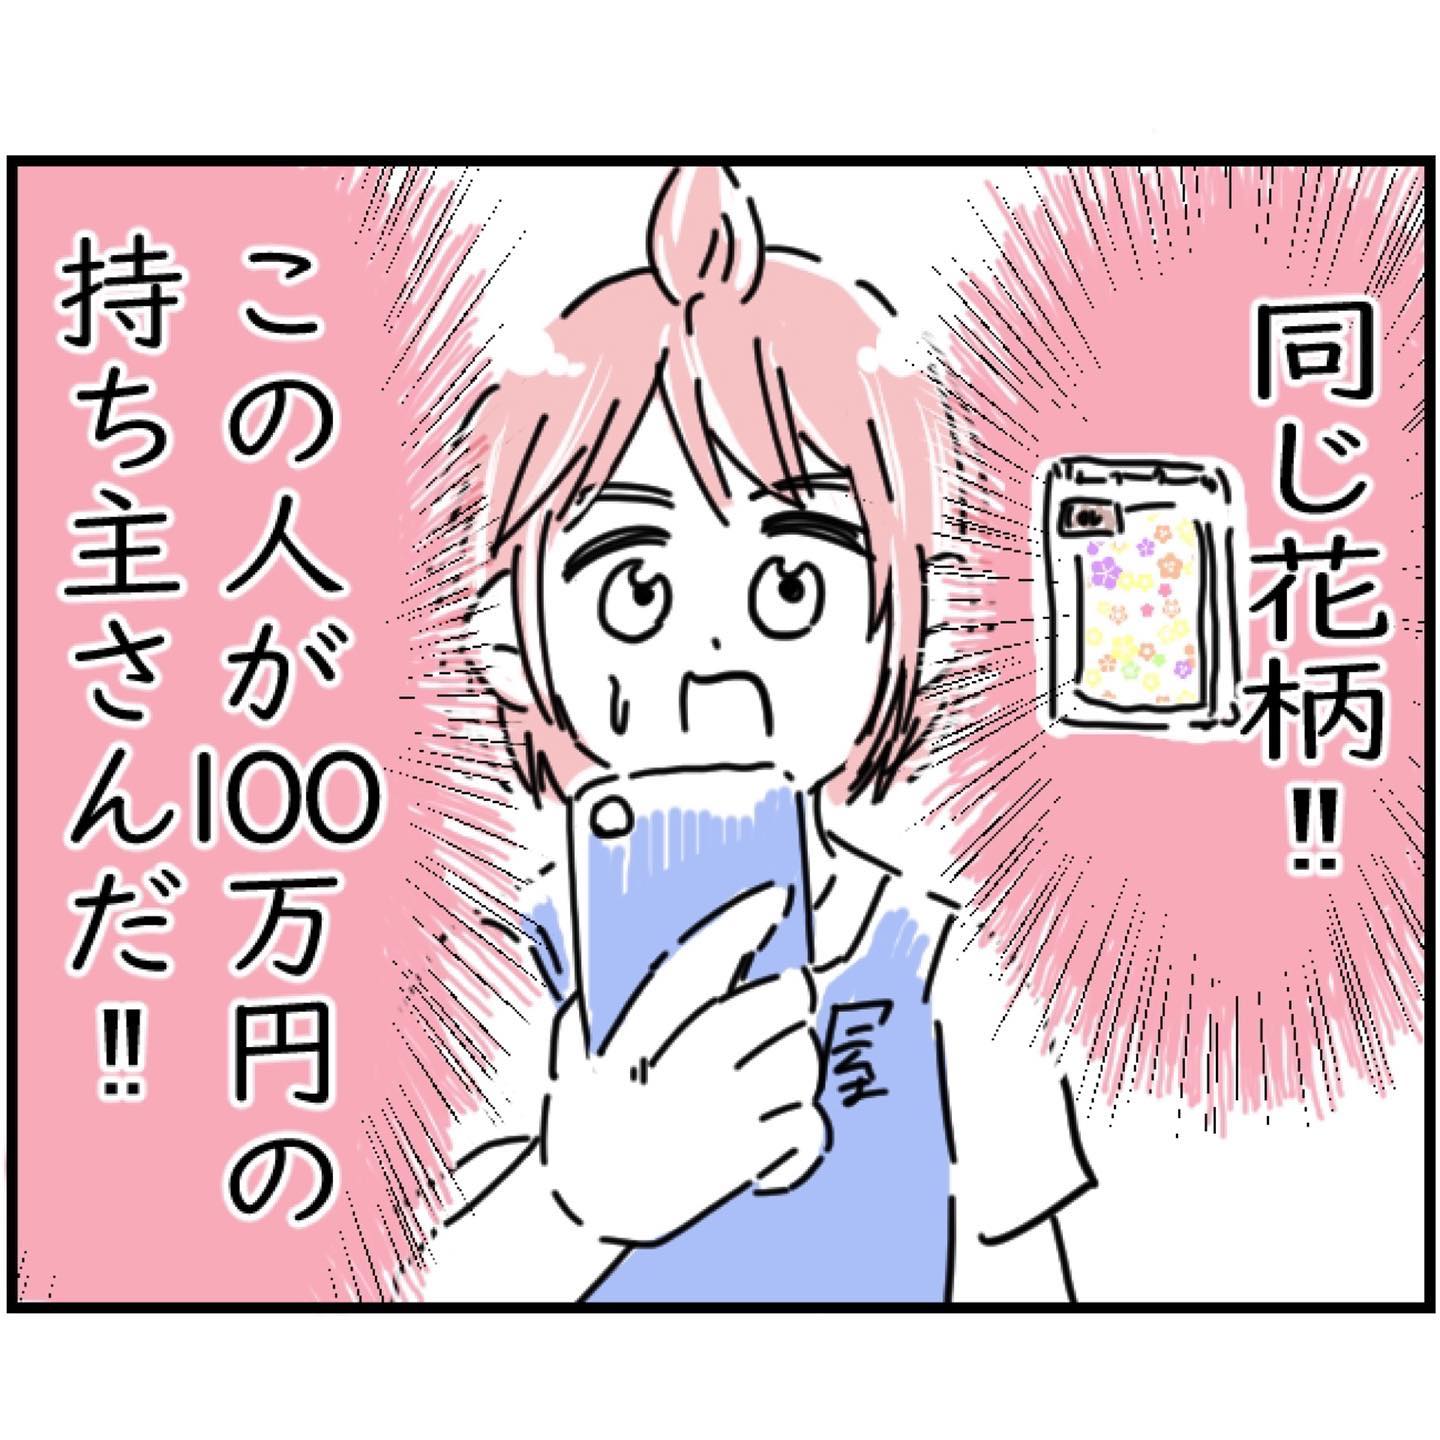 【40】リサイクル店で買ったレジャーシートに100万円入ってた話